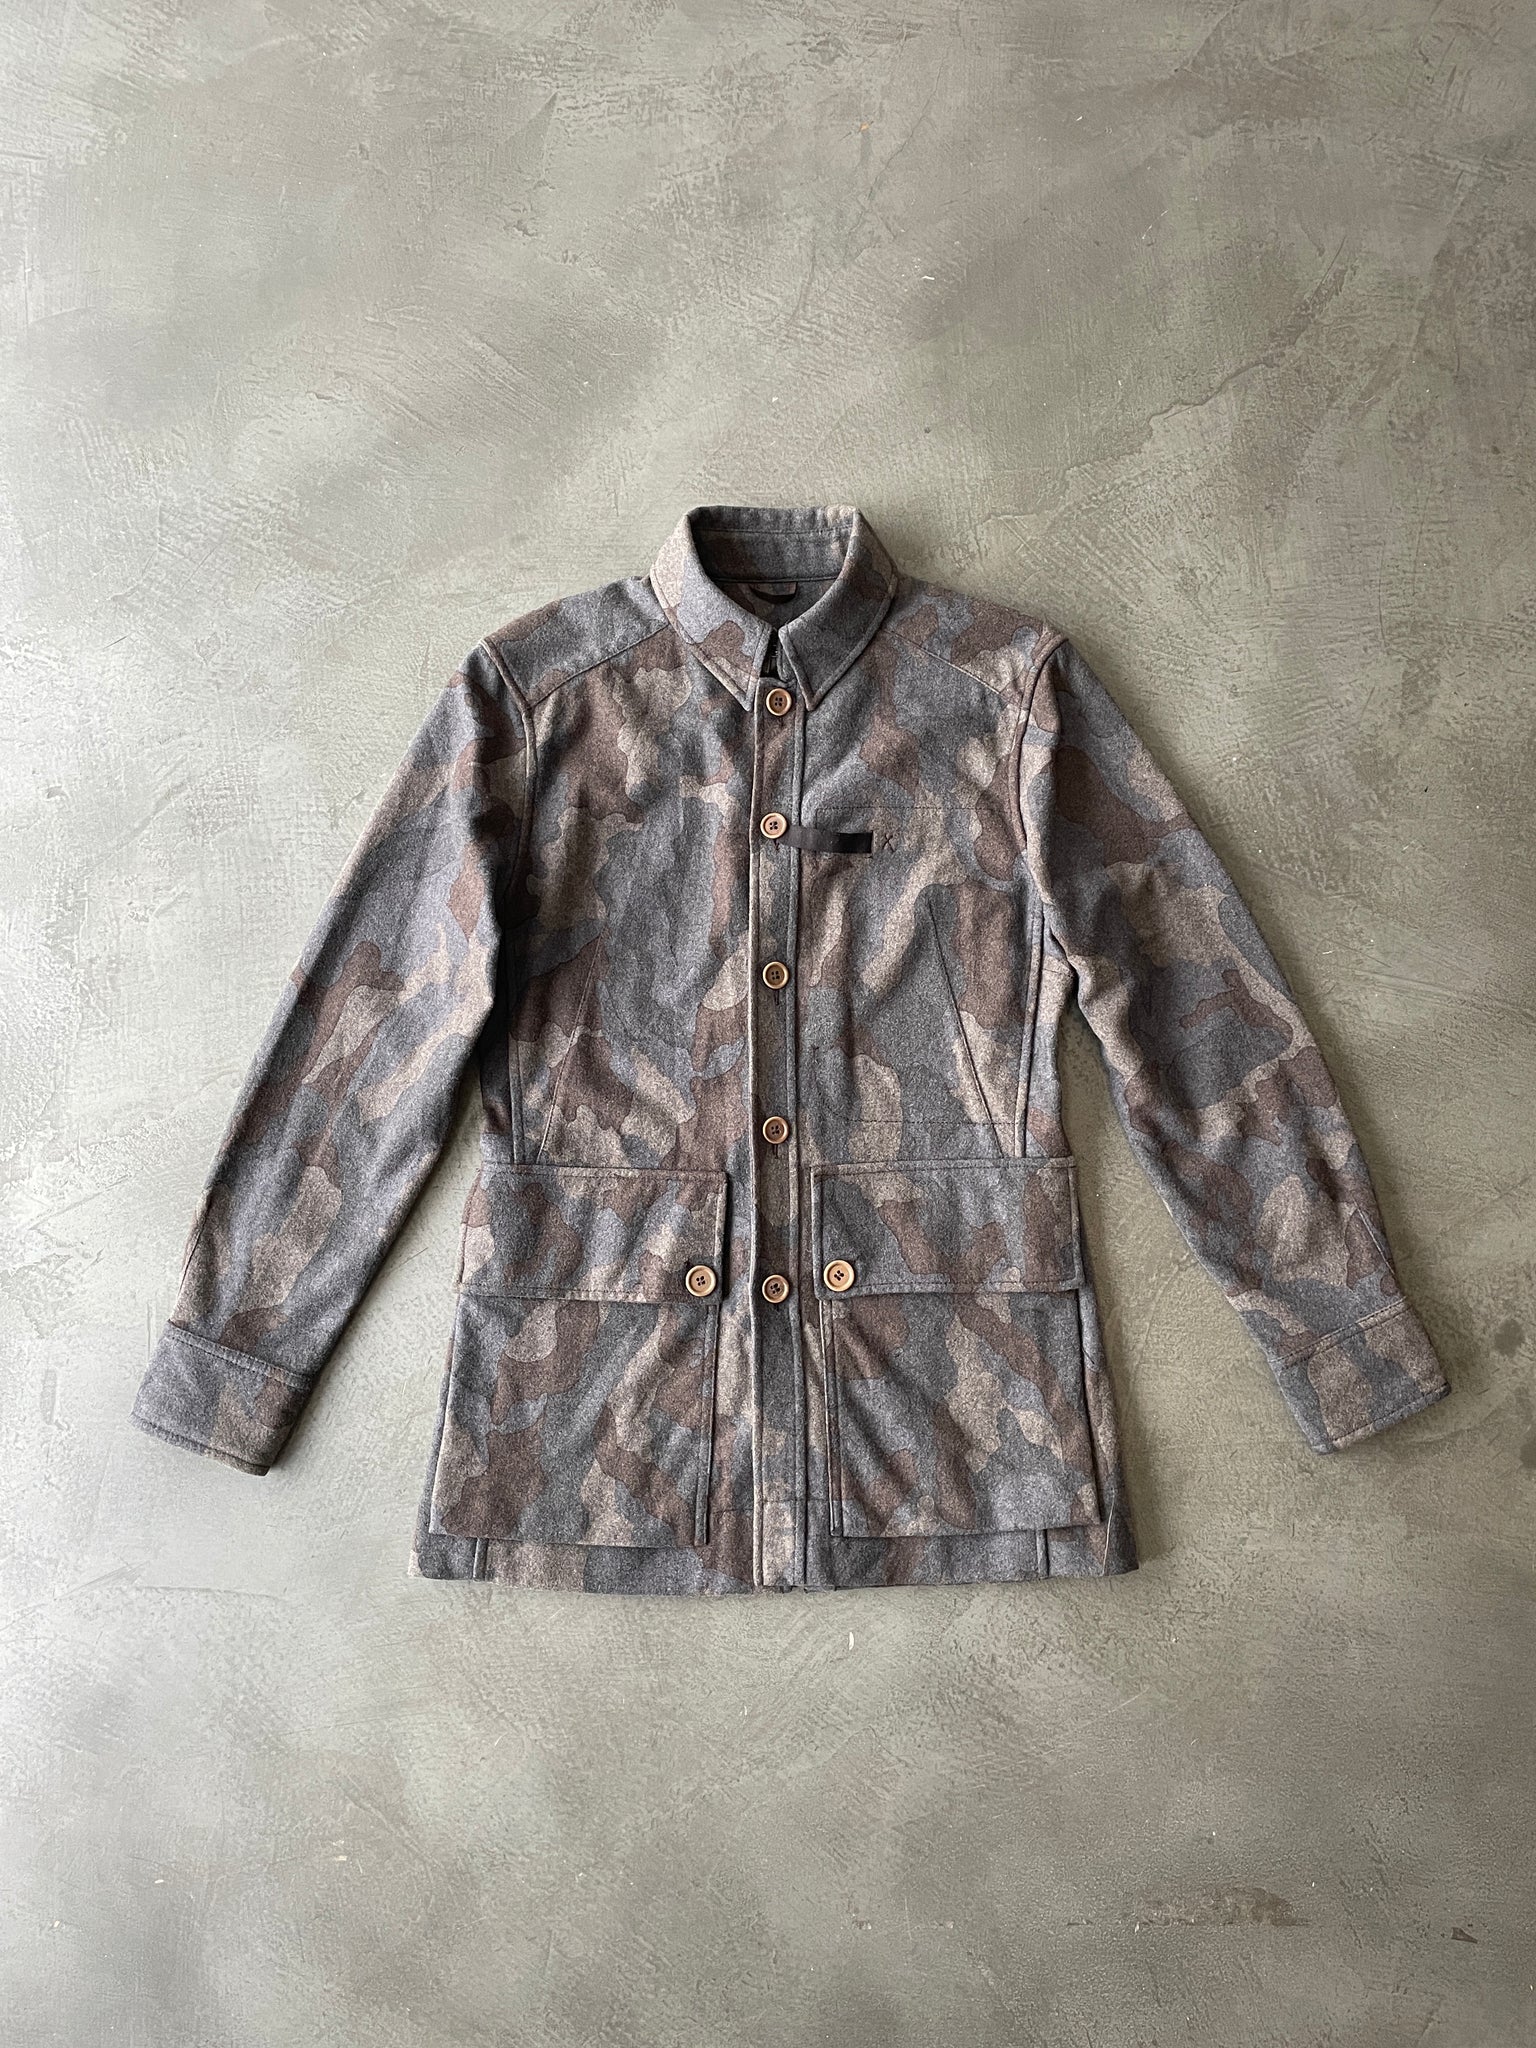 Military Camouflage Jacket